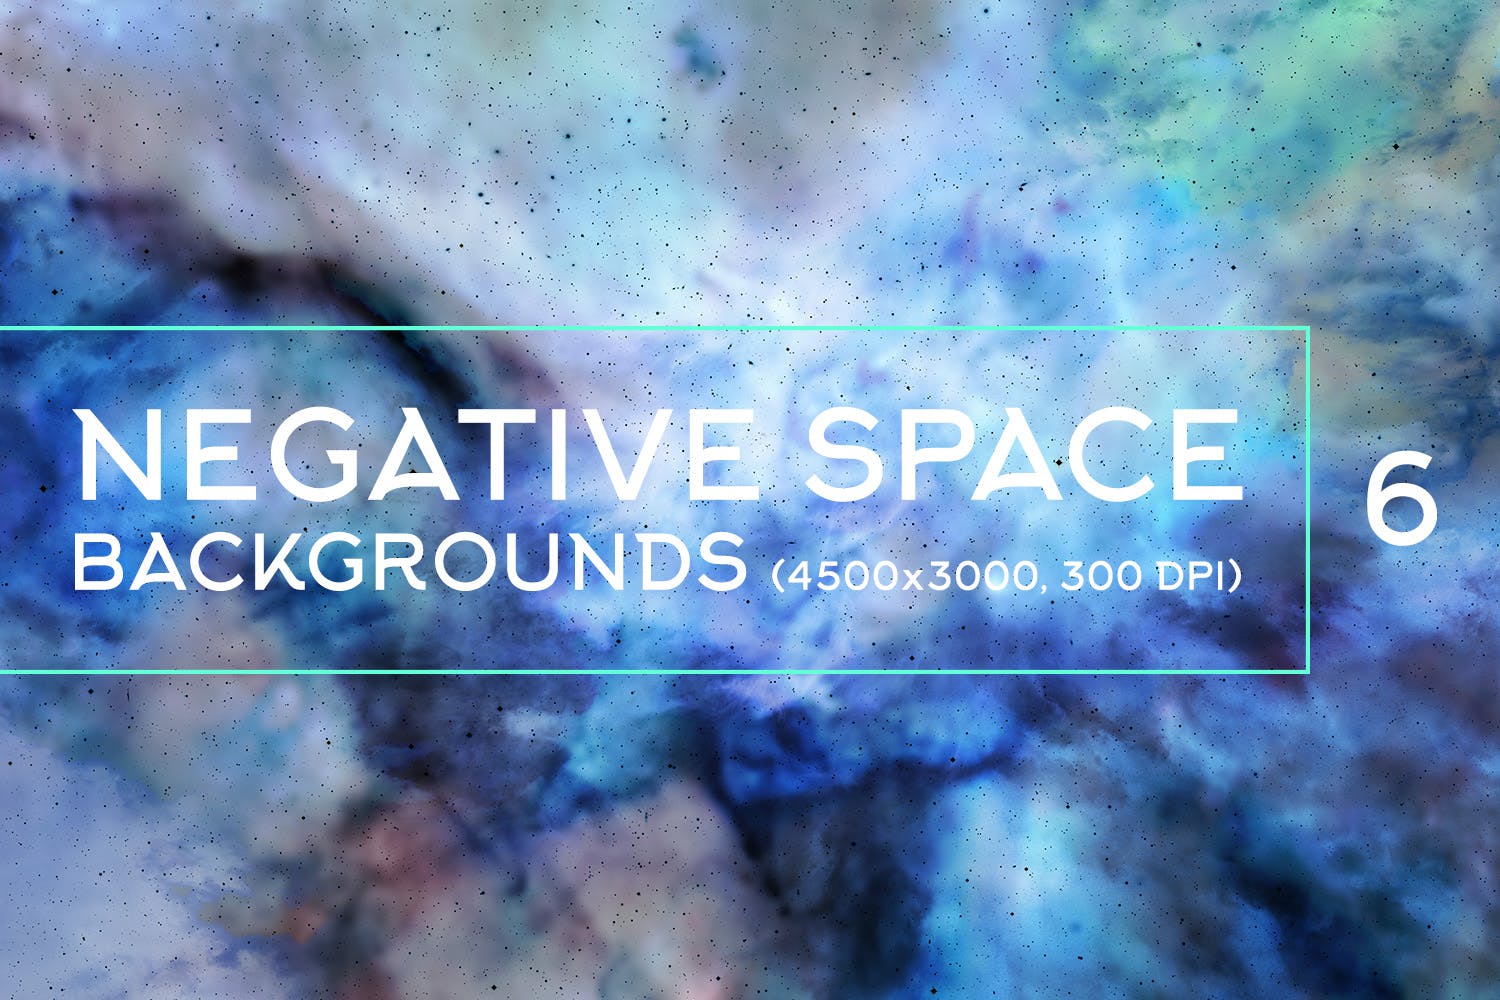 负空间水彩肌理纹理背景素材包v6 Negative Space Backgrounds Vol.6插图